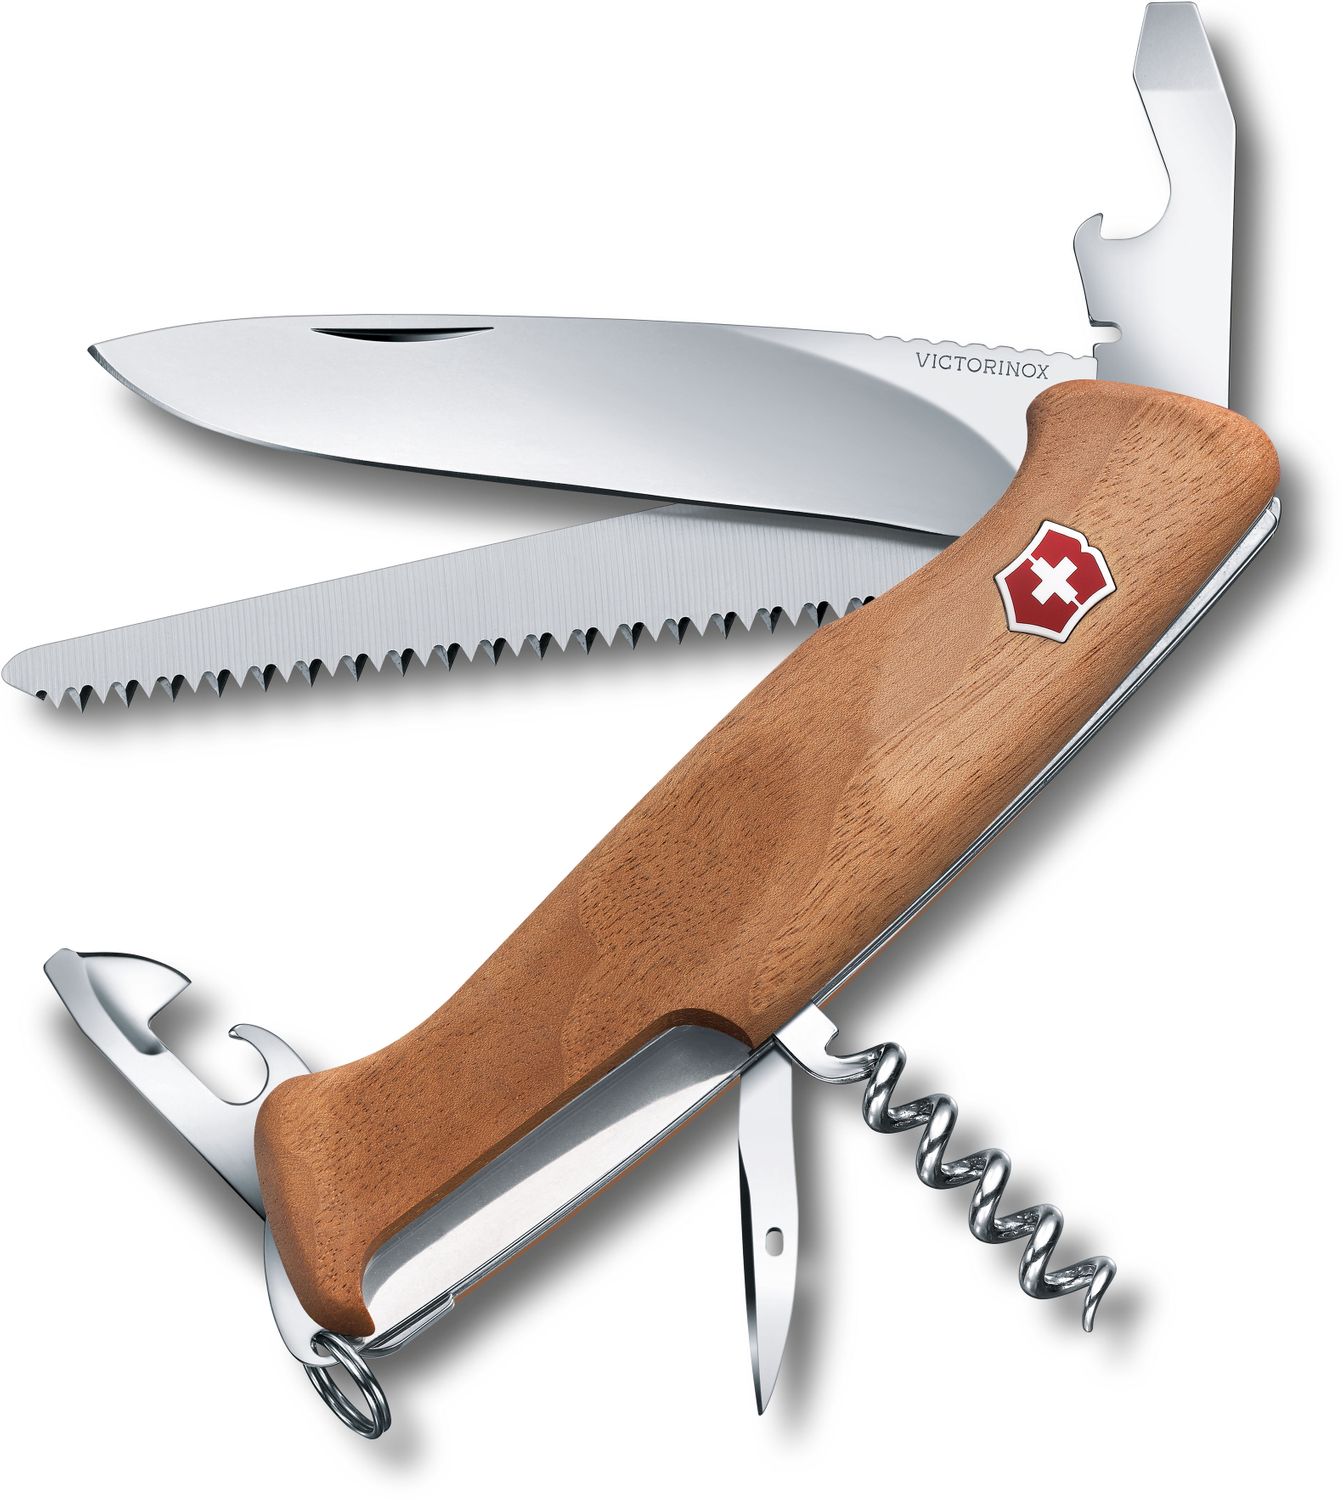 Swiss Army Knife Scales American Wallnut